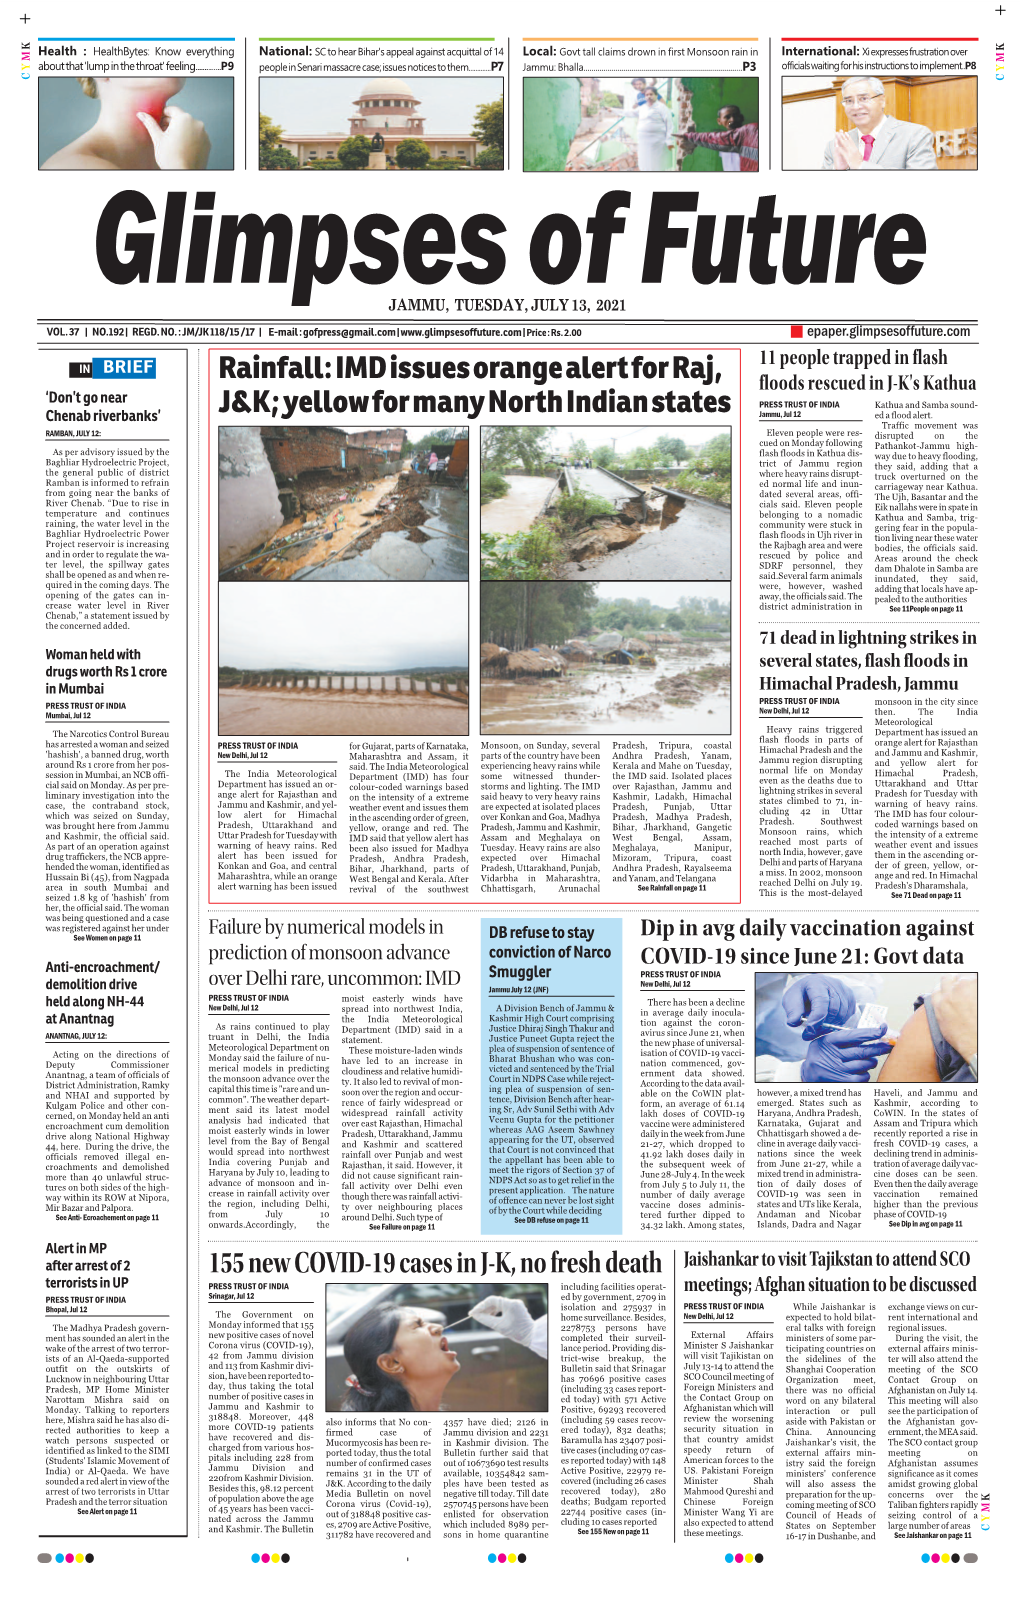 Rainfall: IMD Issues Orange Alert for Raj, J&K